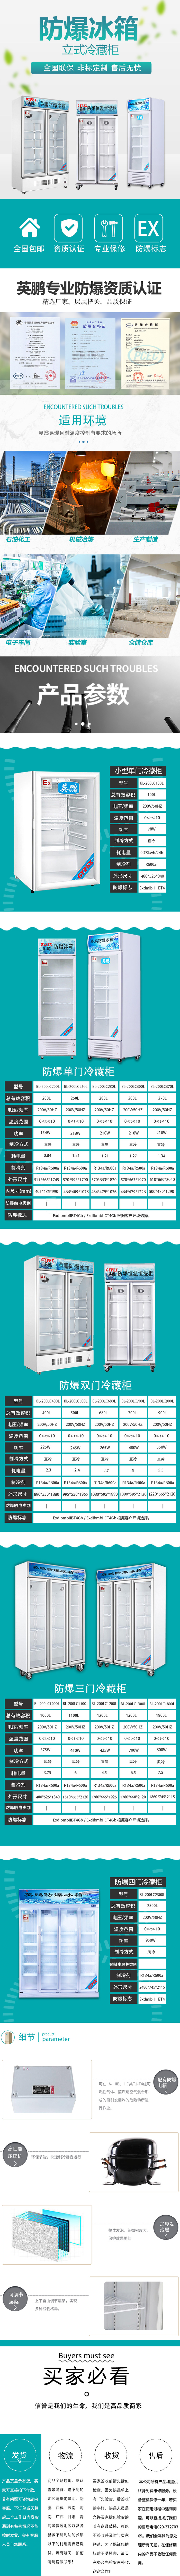 BL-200LC300L福建冷藏防爆冰箱0~10℃单温冰箱 防爆冰箱,冷藏冰箱,工业防爆冰箱,化学品防爆冰箱